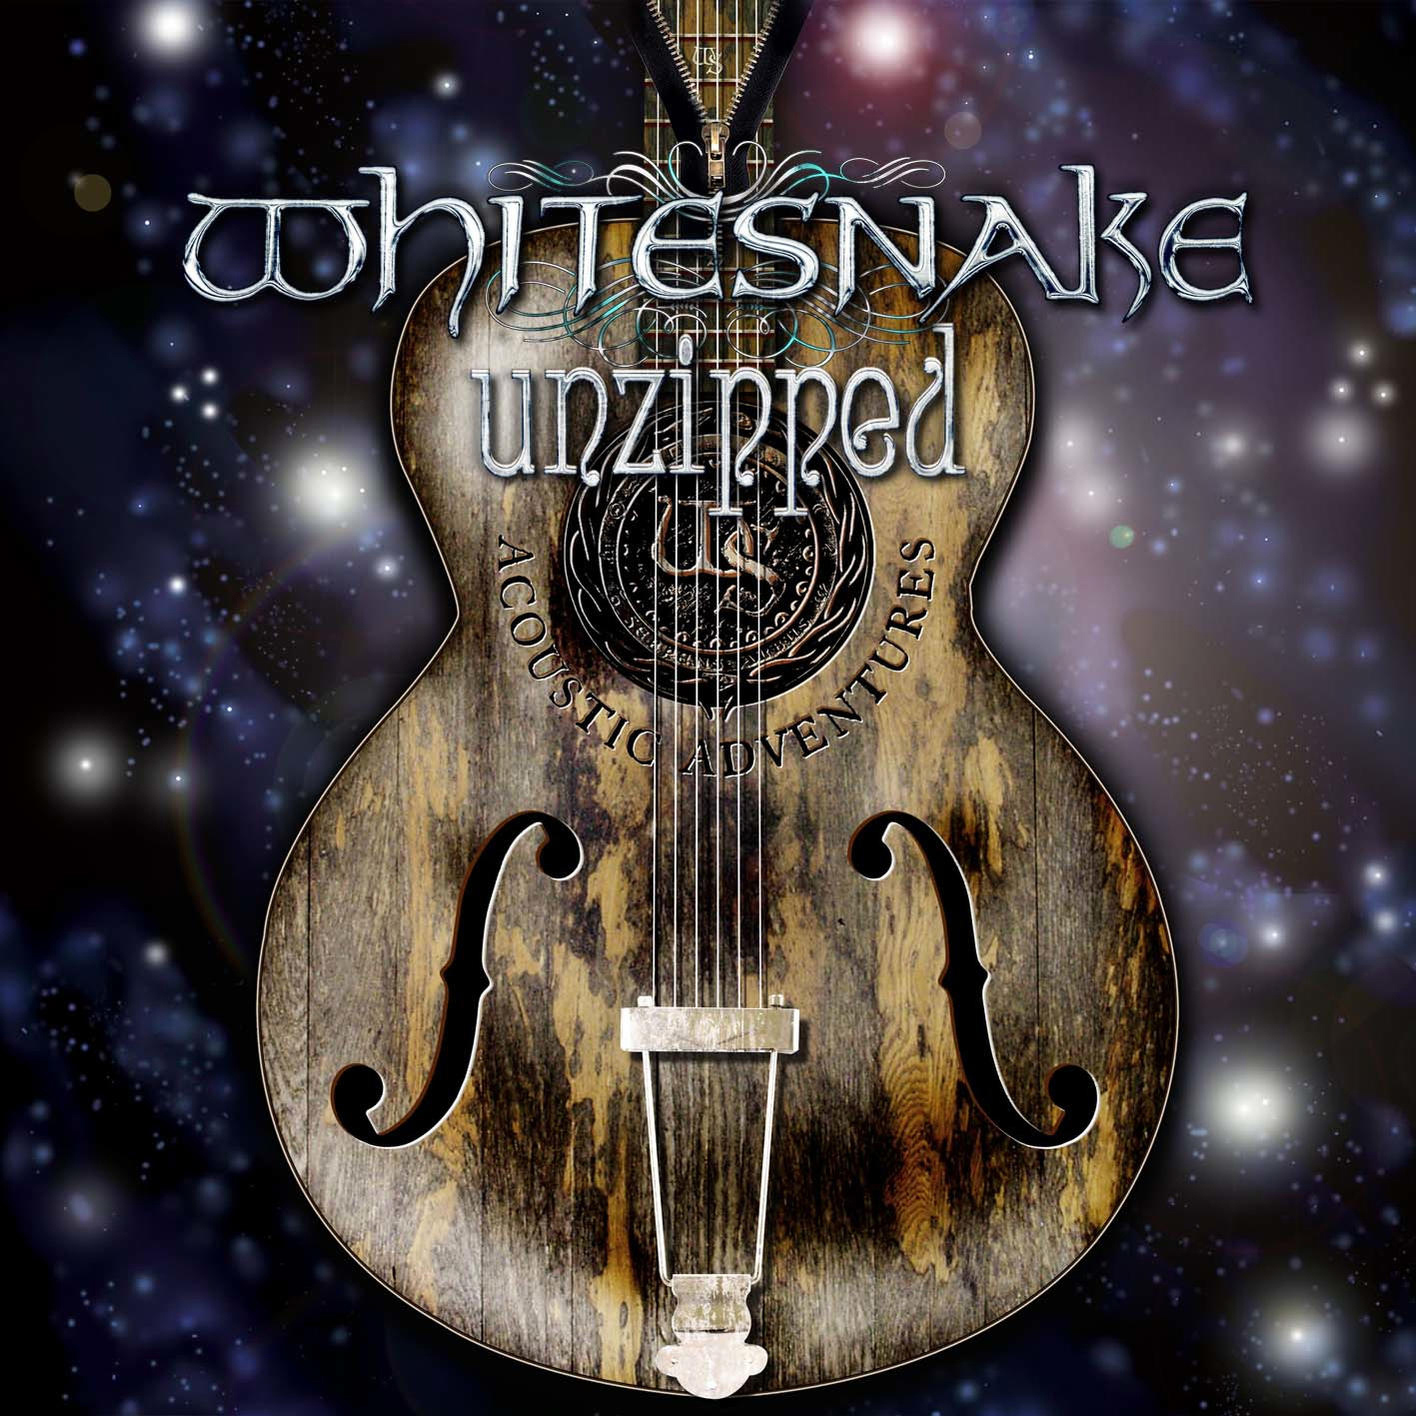 Whitesnake - DVD (Super Deluxe - Video) Unzipped + (CD Edition)